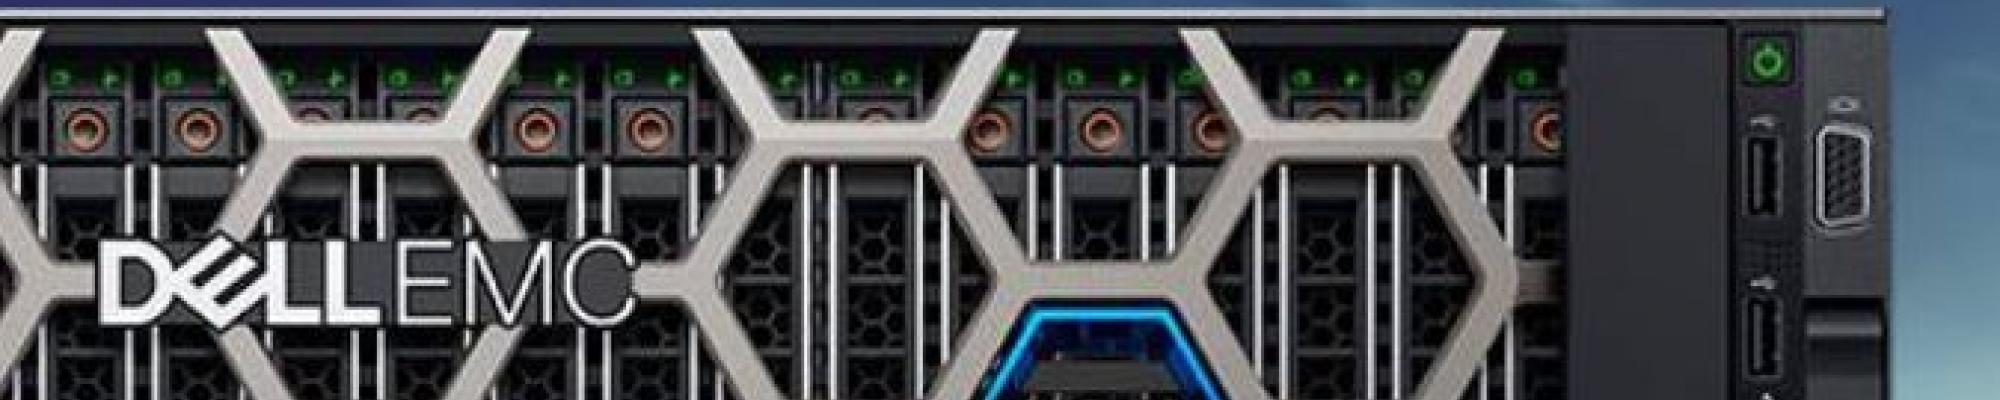 Dell EMC VxRail: één en al integratie 